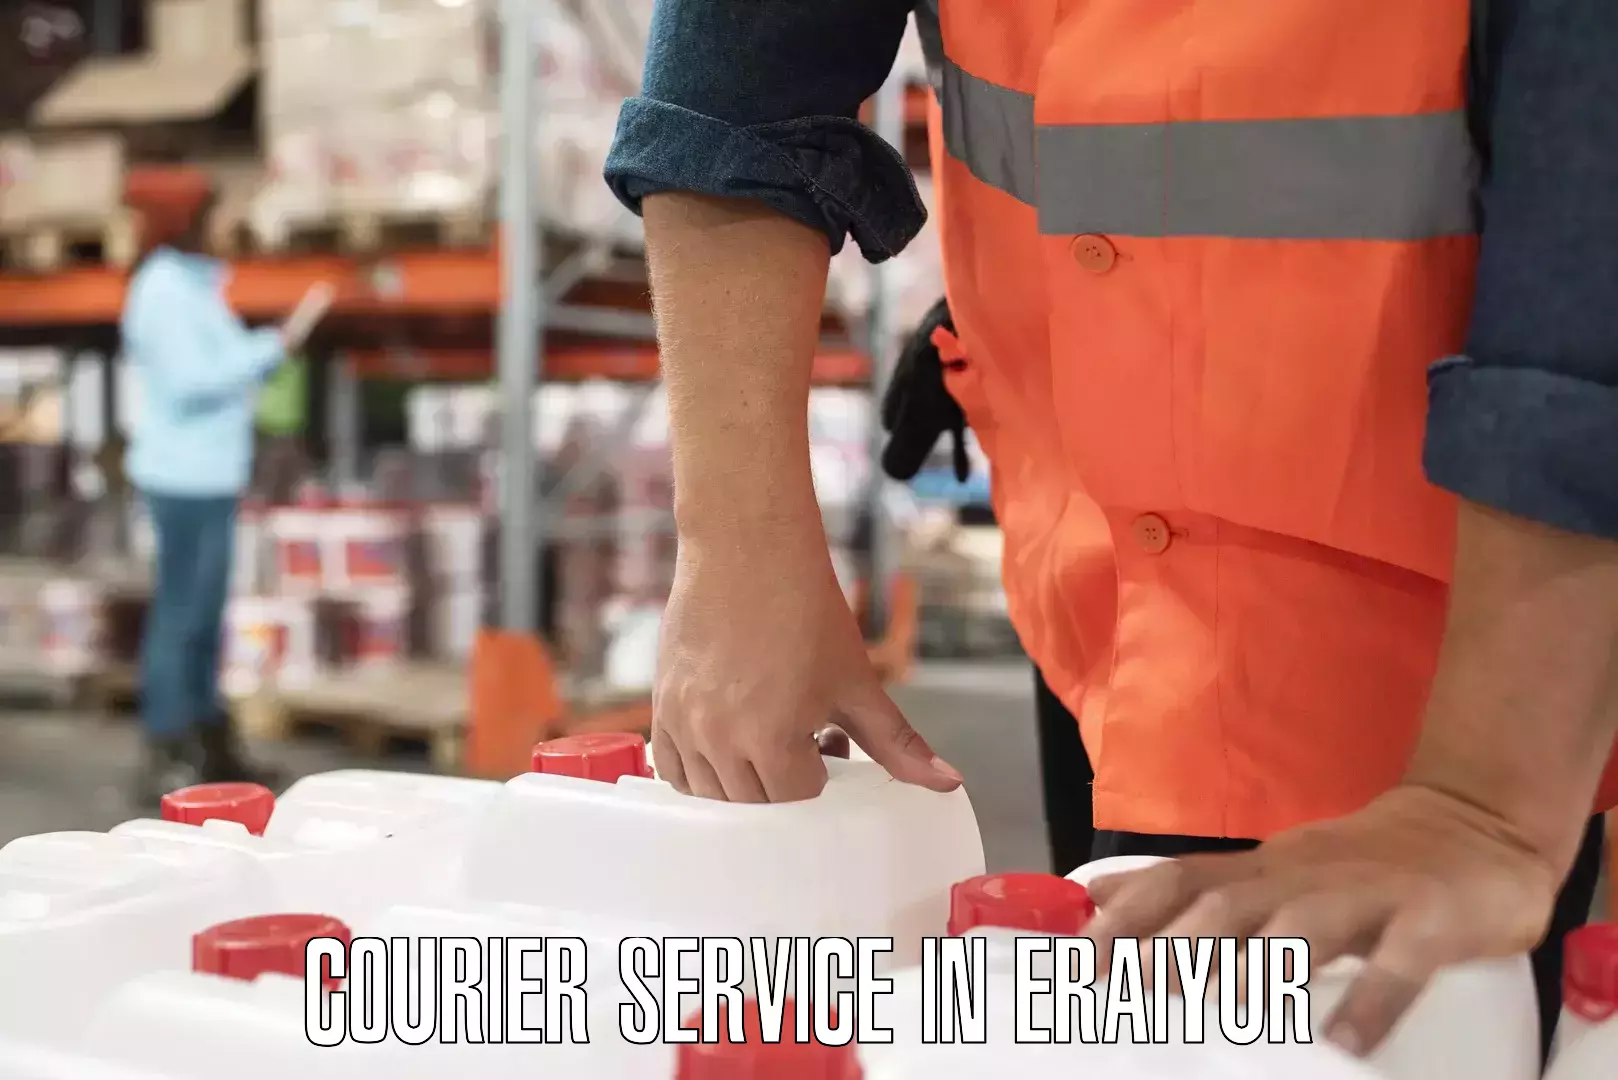 Premium courier services in Eraiyur